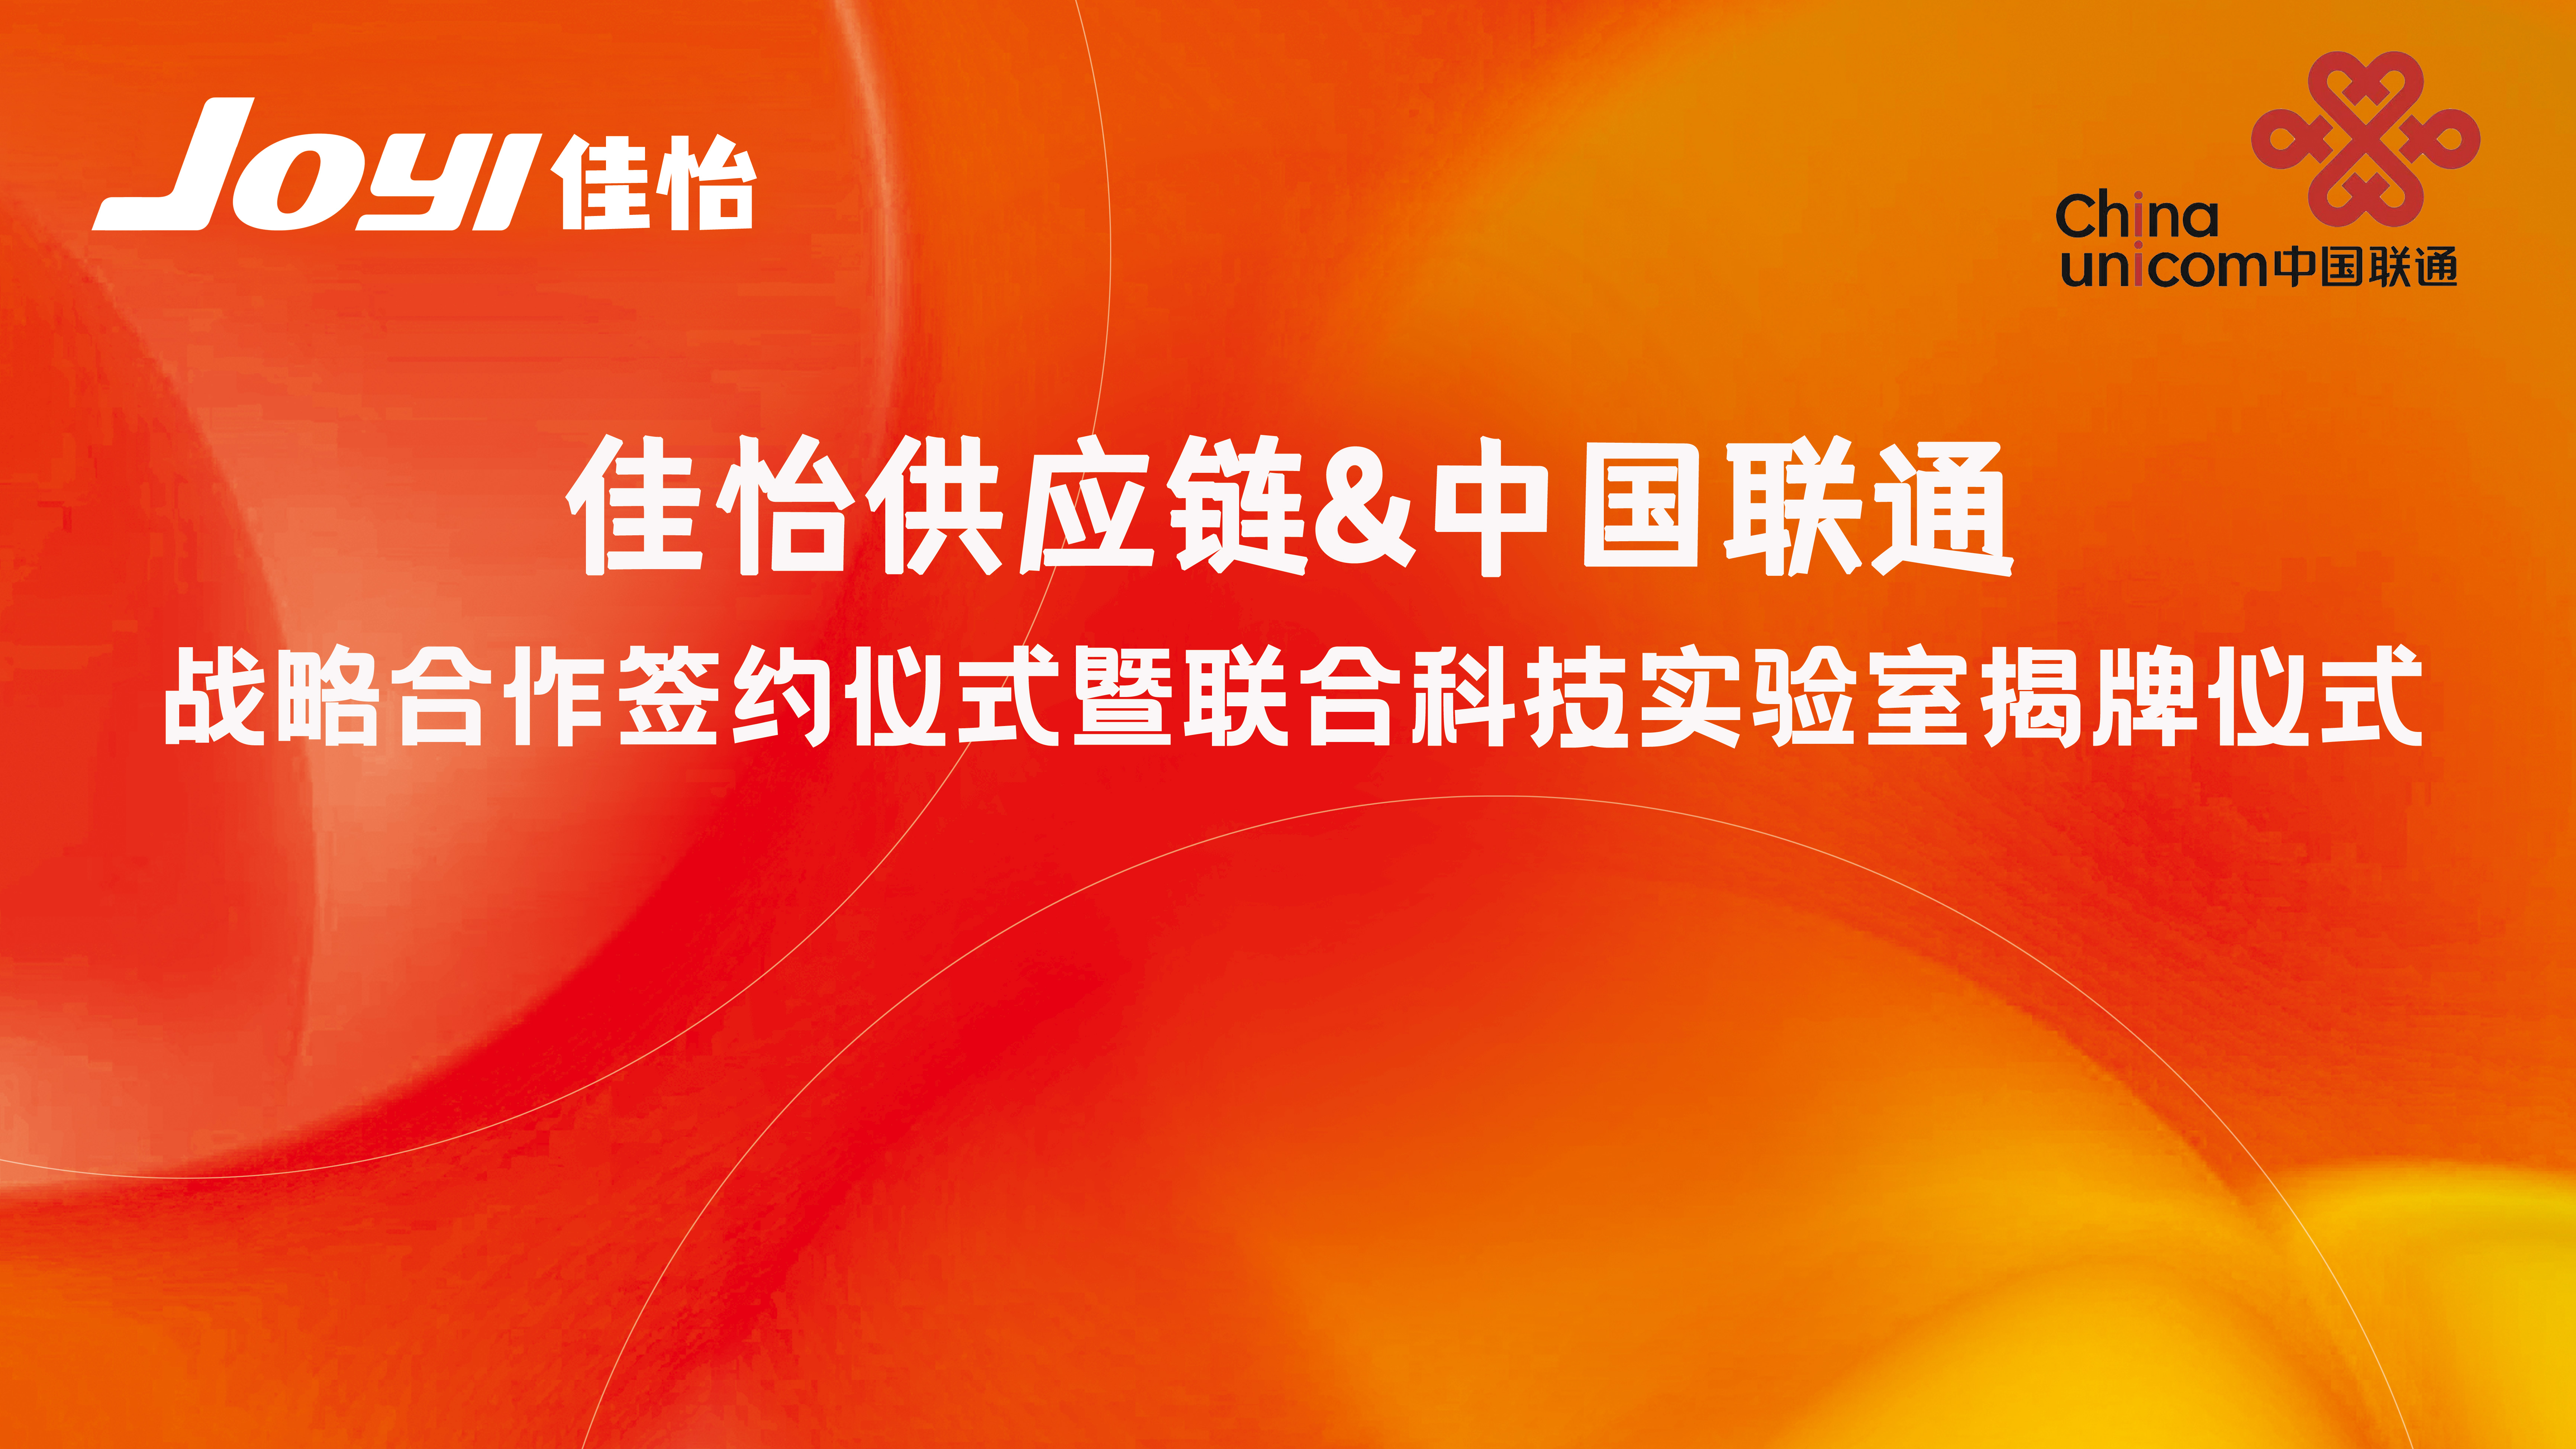 【佳怡快讯】强强联合！佳怡供应链与中国联通签署战略合作一一科技联合实验室揭牌成立